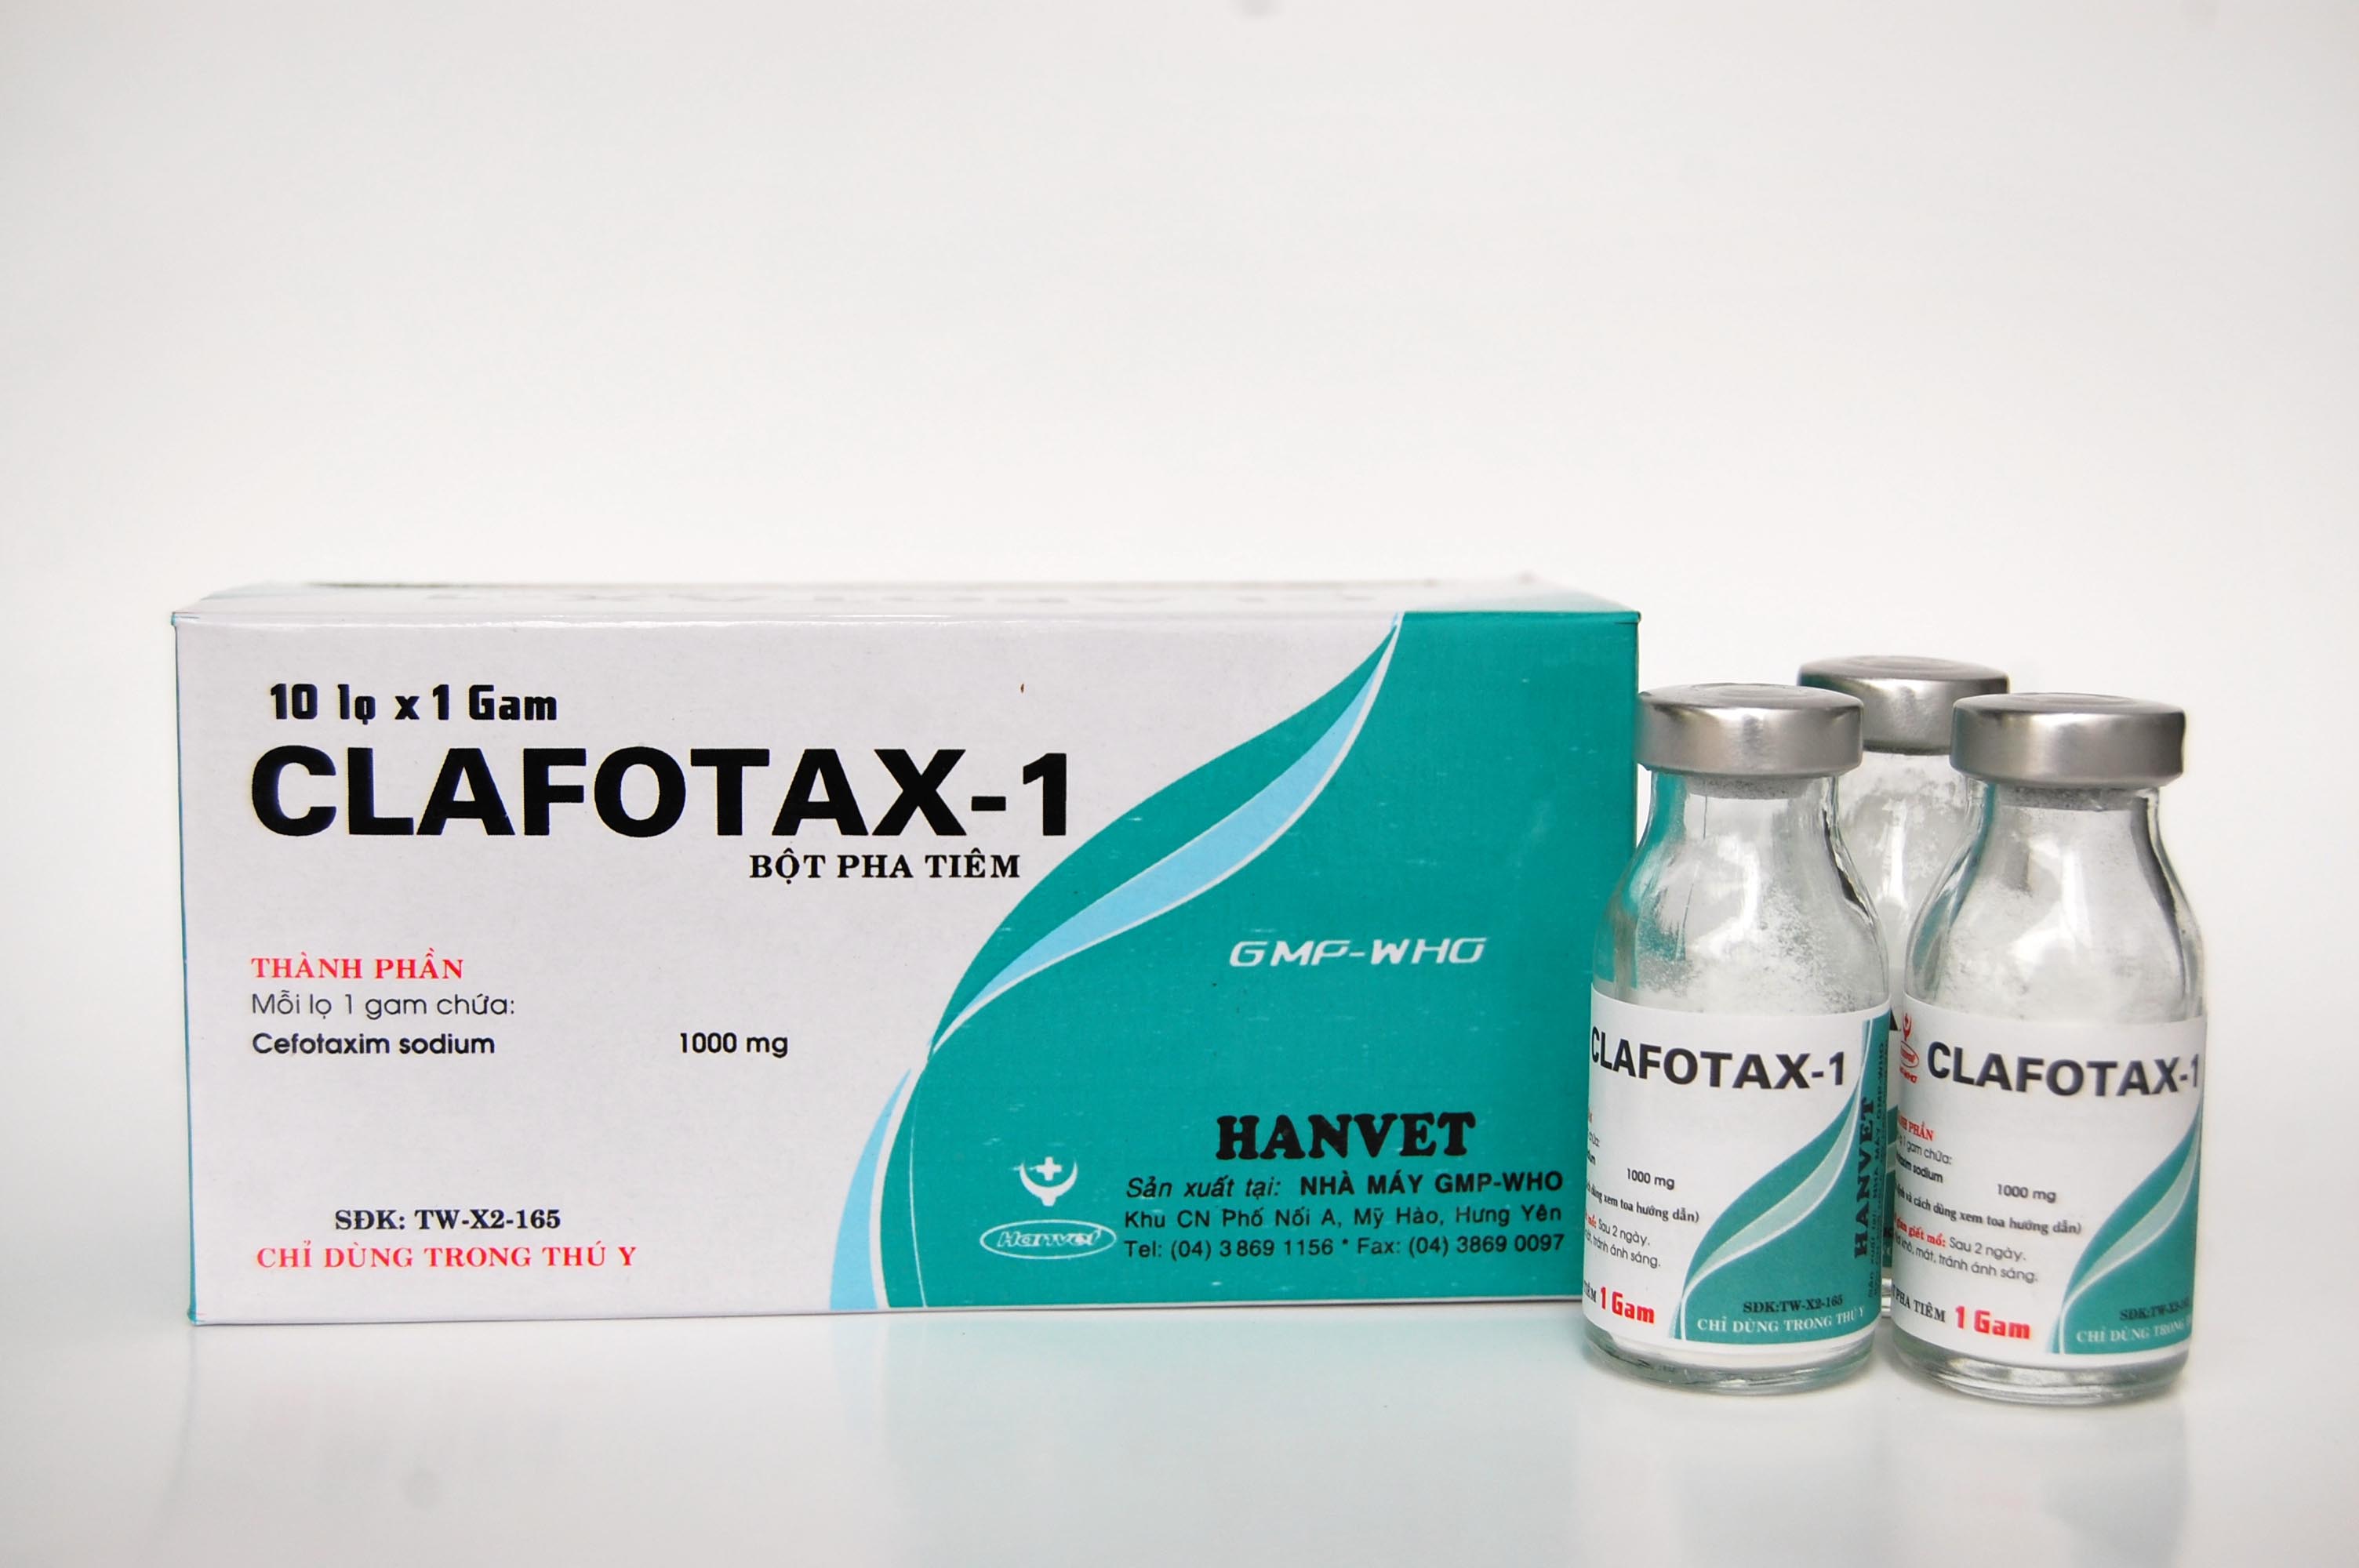 Clafotax-1